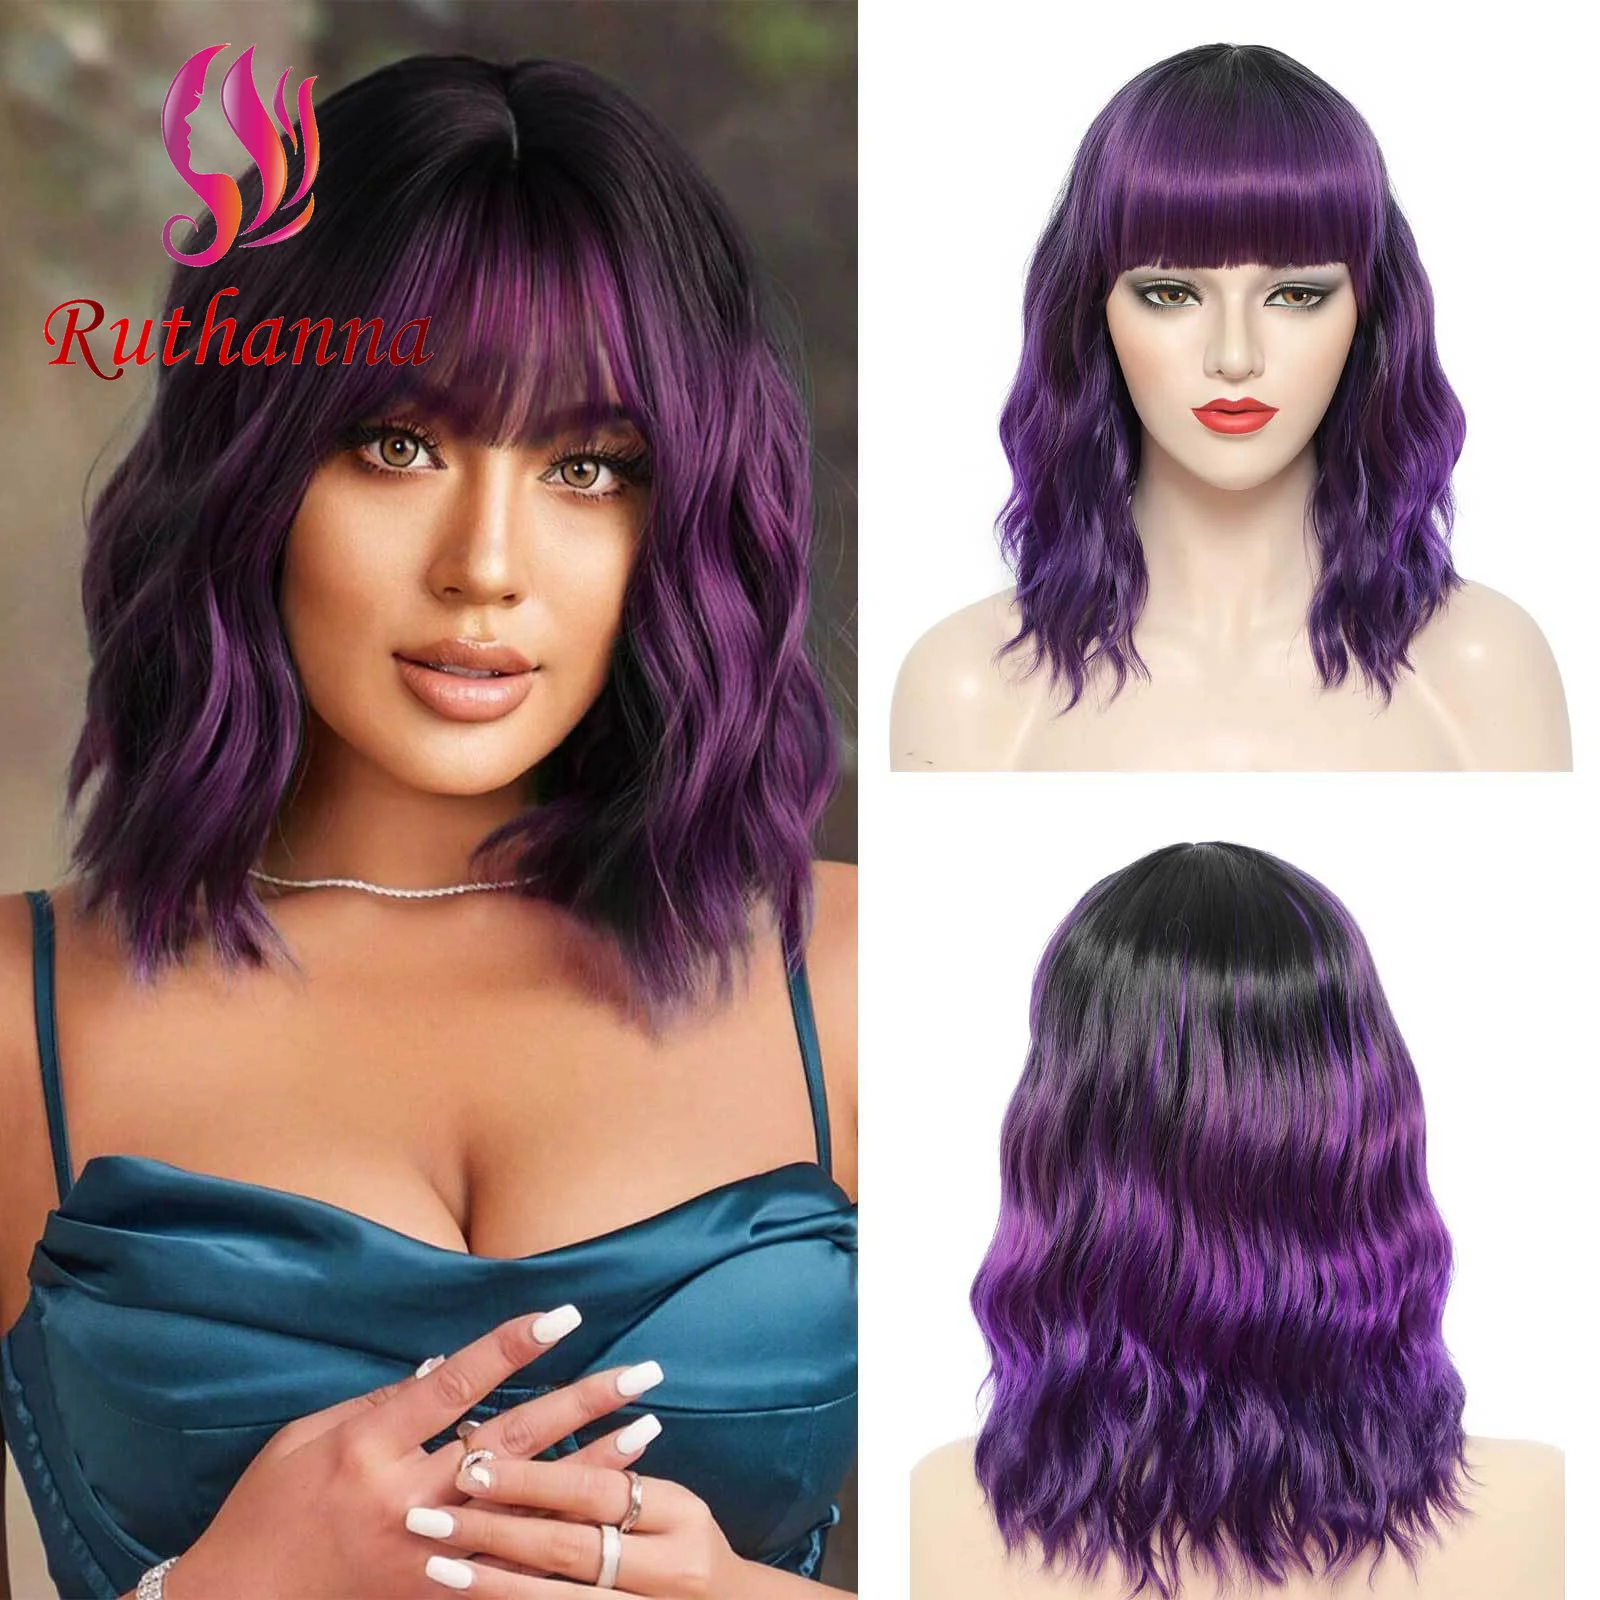 

Модный синтетический короткий вьющийся женский парик Боб с водными волнами, фиолетовые тупые челки, 14 дюймов, термостойкий волоконный парик для косплея